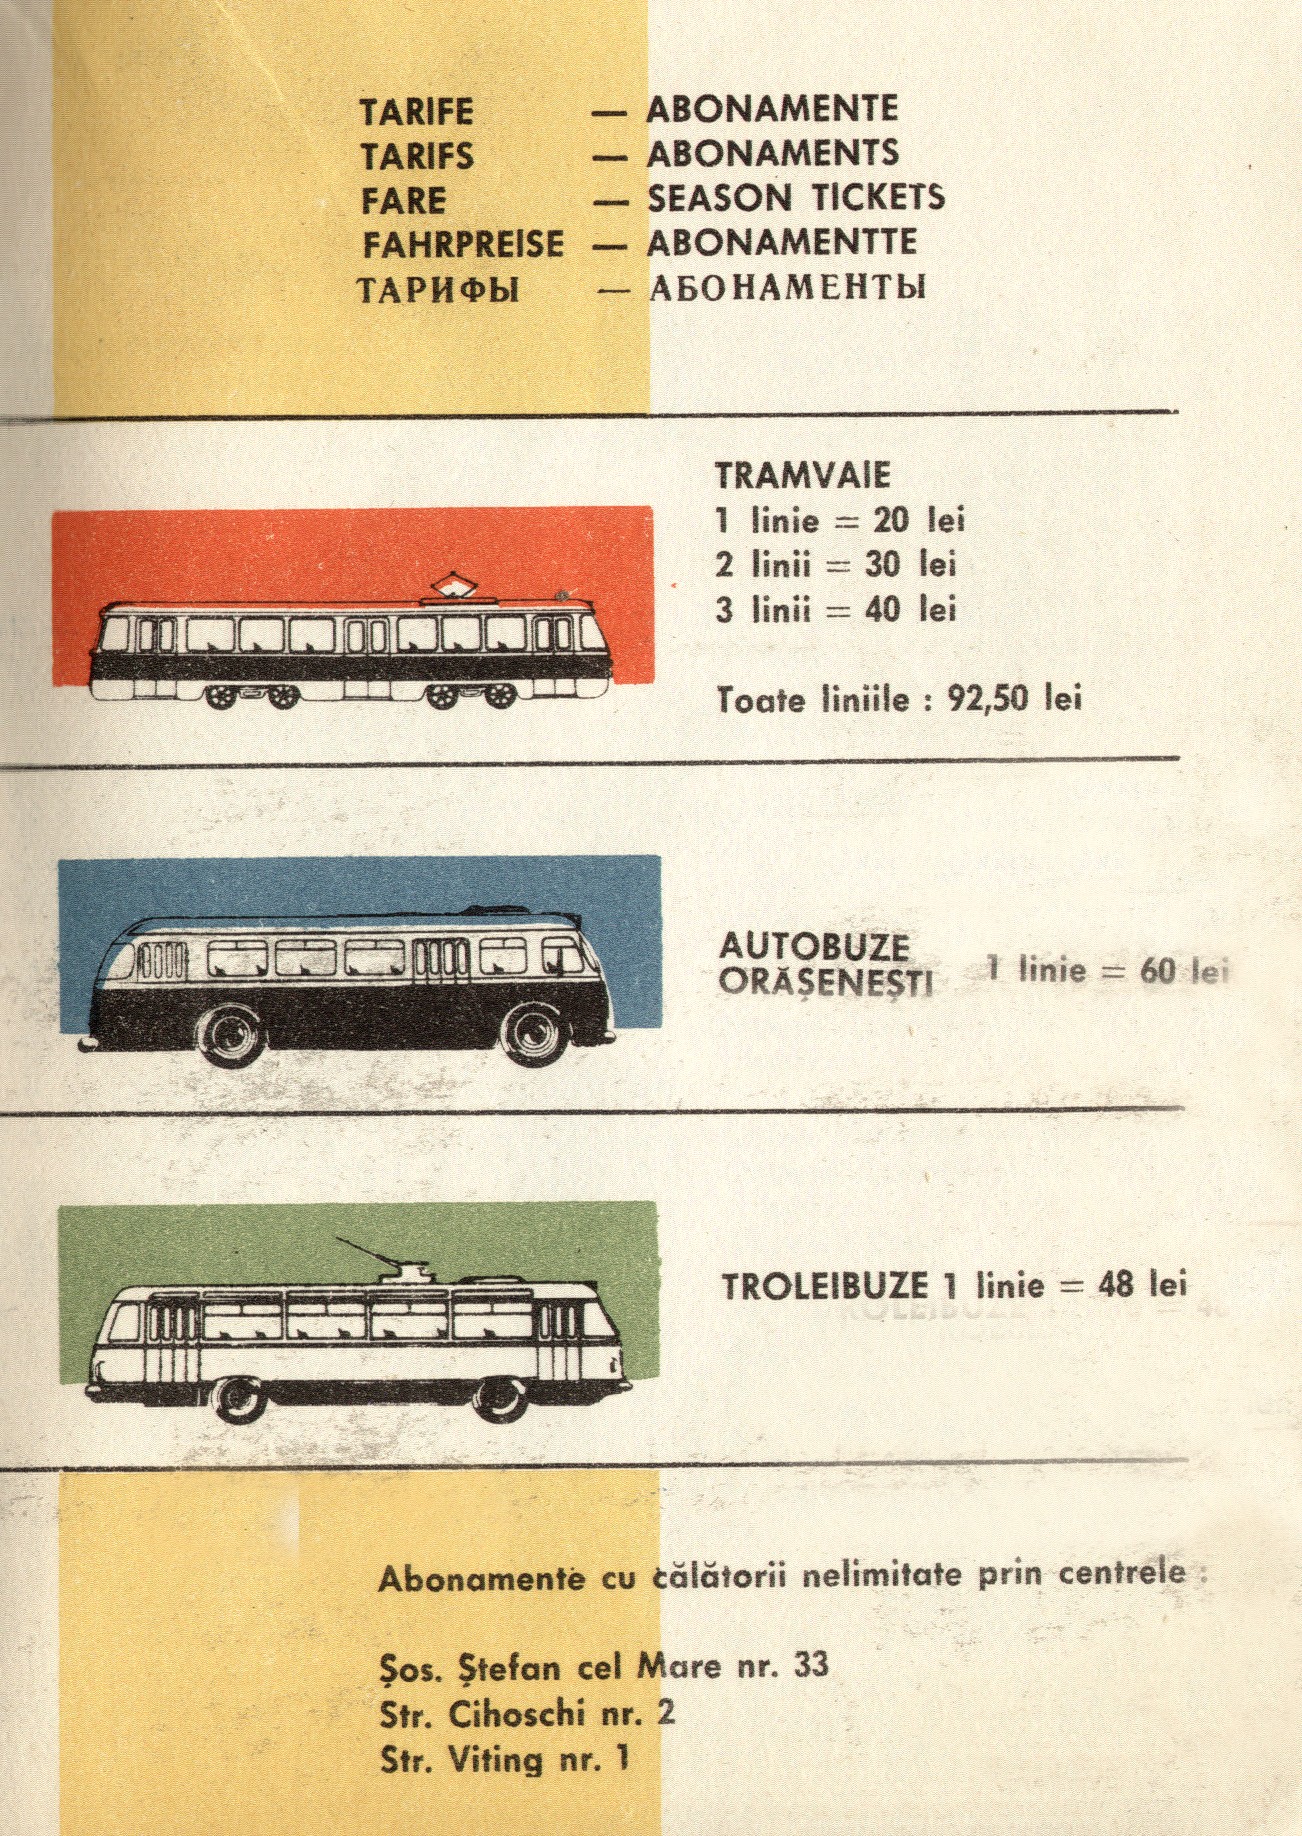 Ghidul ITB 1975 - tarife de călătorie